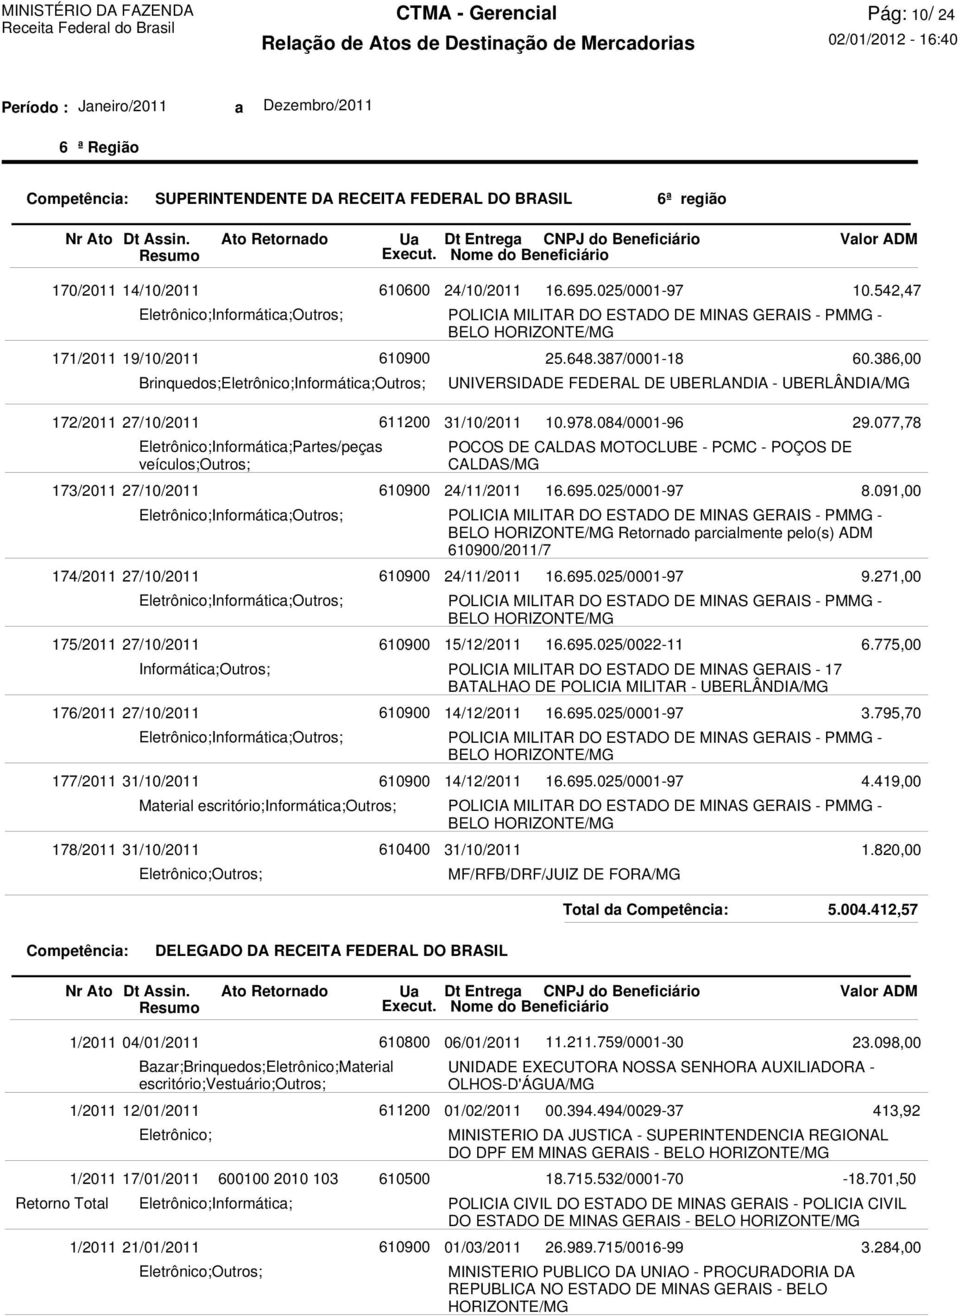 MOTOCLUBE - PCMC - POÇOS DE CALDAS/MG 24/11/2011 Retornado parcialmente pelo(s) ADM /2011/7 24/11/2011 15/12/2011 POLICIA MILITAR DO ESTADO DE MINAS GERAIS - 17 BATALHAO DE POLICIA MILITAR -